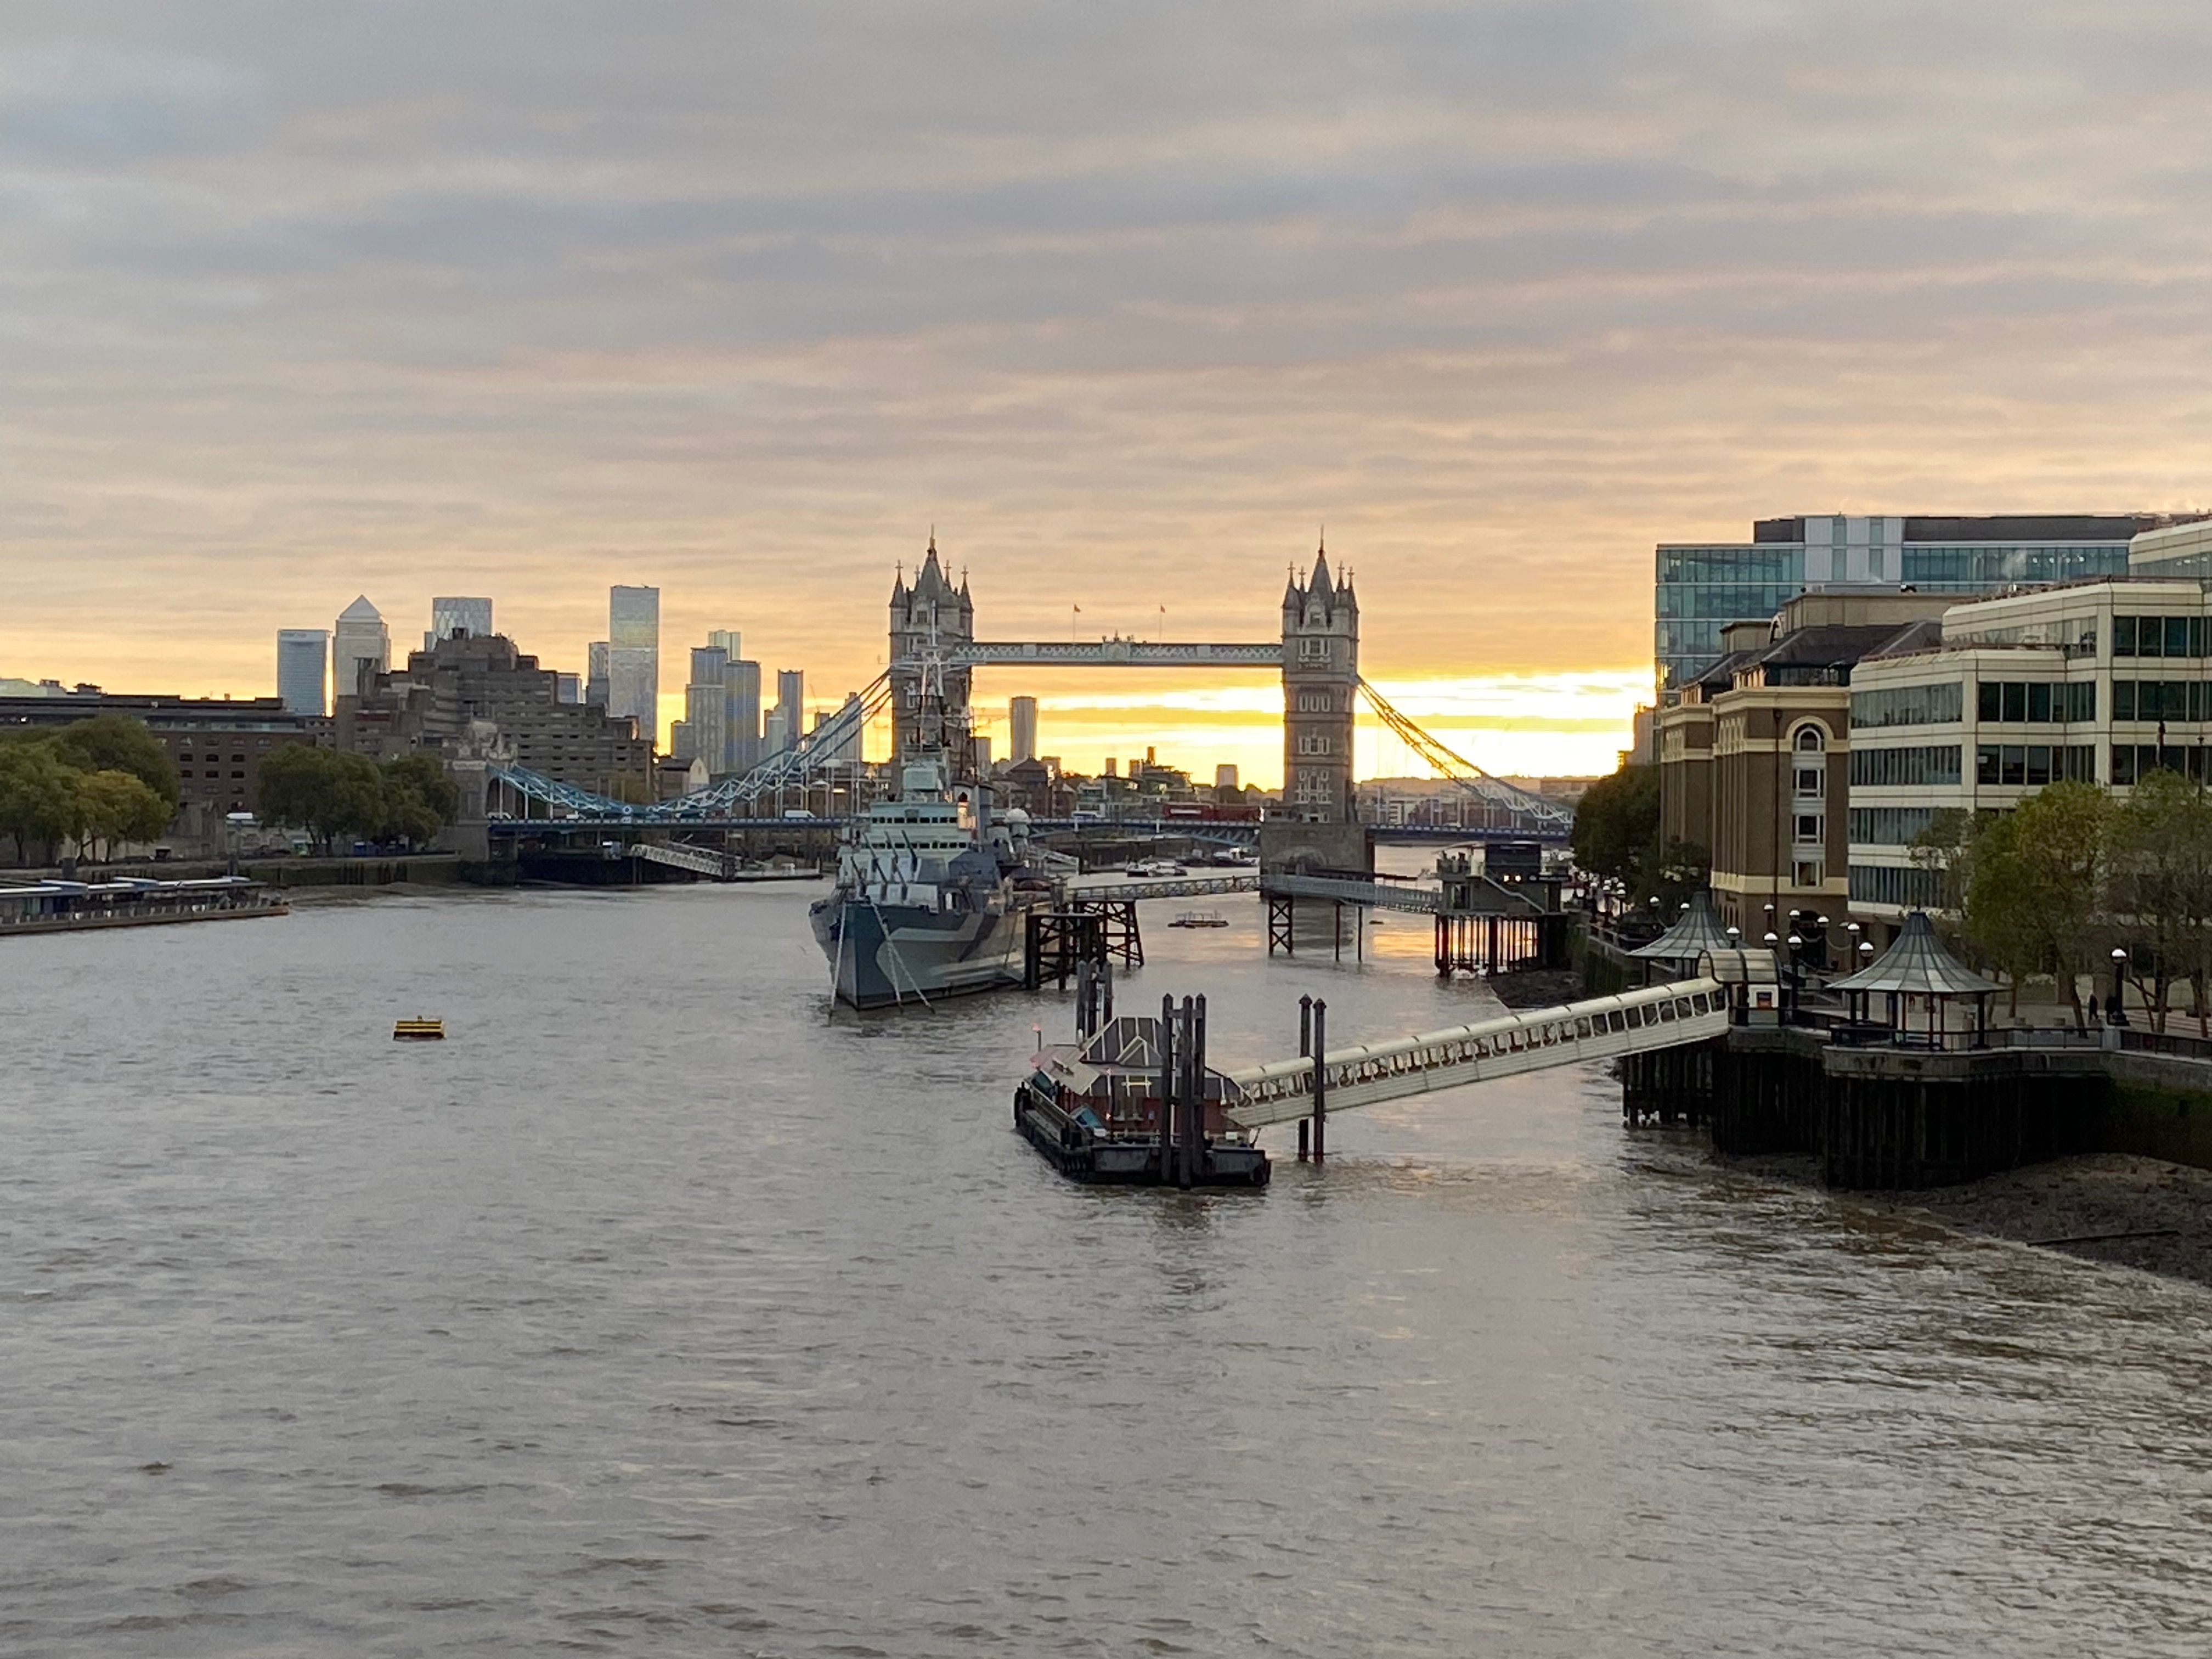 View of the Londen bridge.